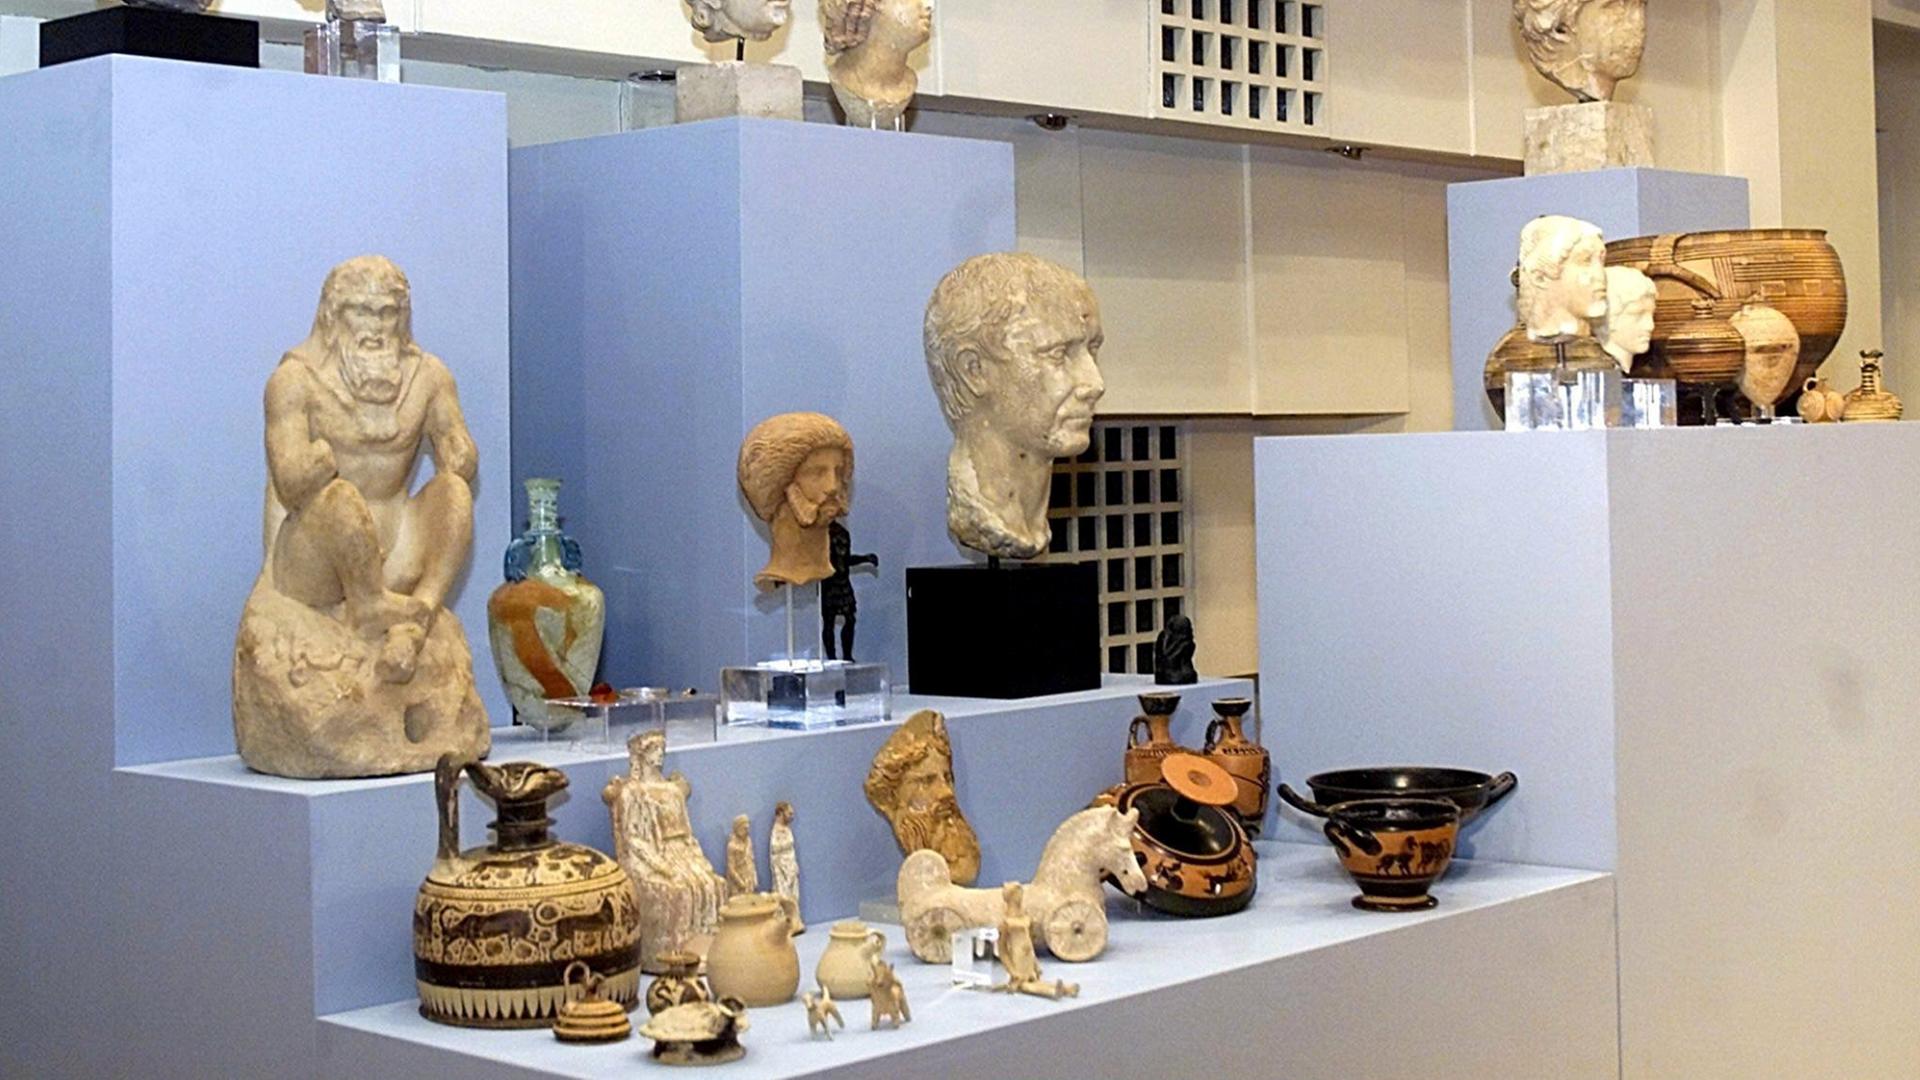 Die 274 antiken Objekte, die 1990 aus dem Archäologischen Museum von Korinth gestohlen worden sind, werden nach ihrer Rückkehr am 22.1.2001 in Athen der Presse gezeigt